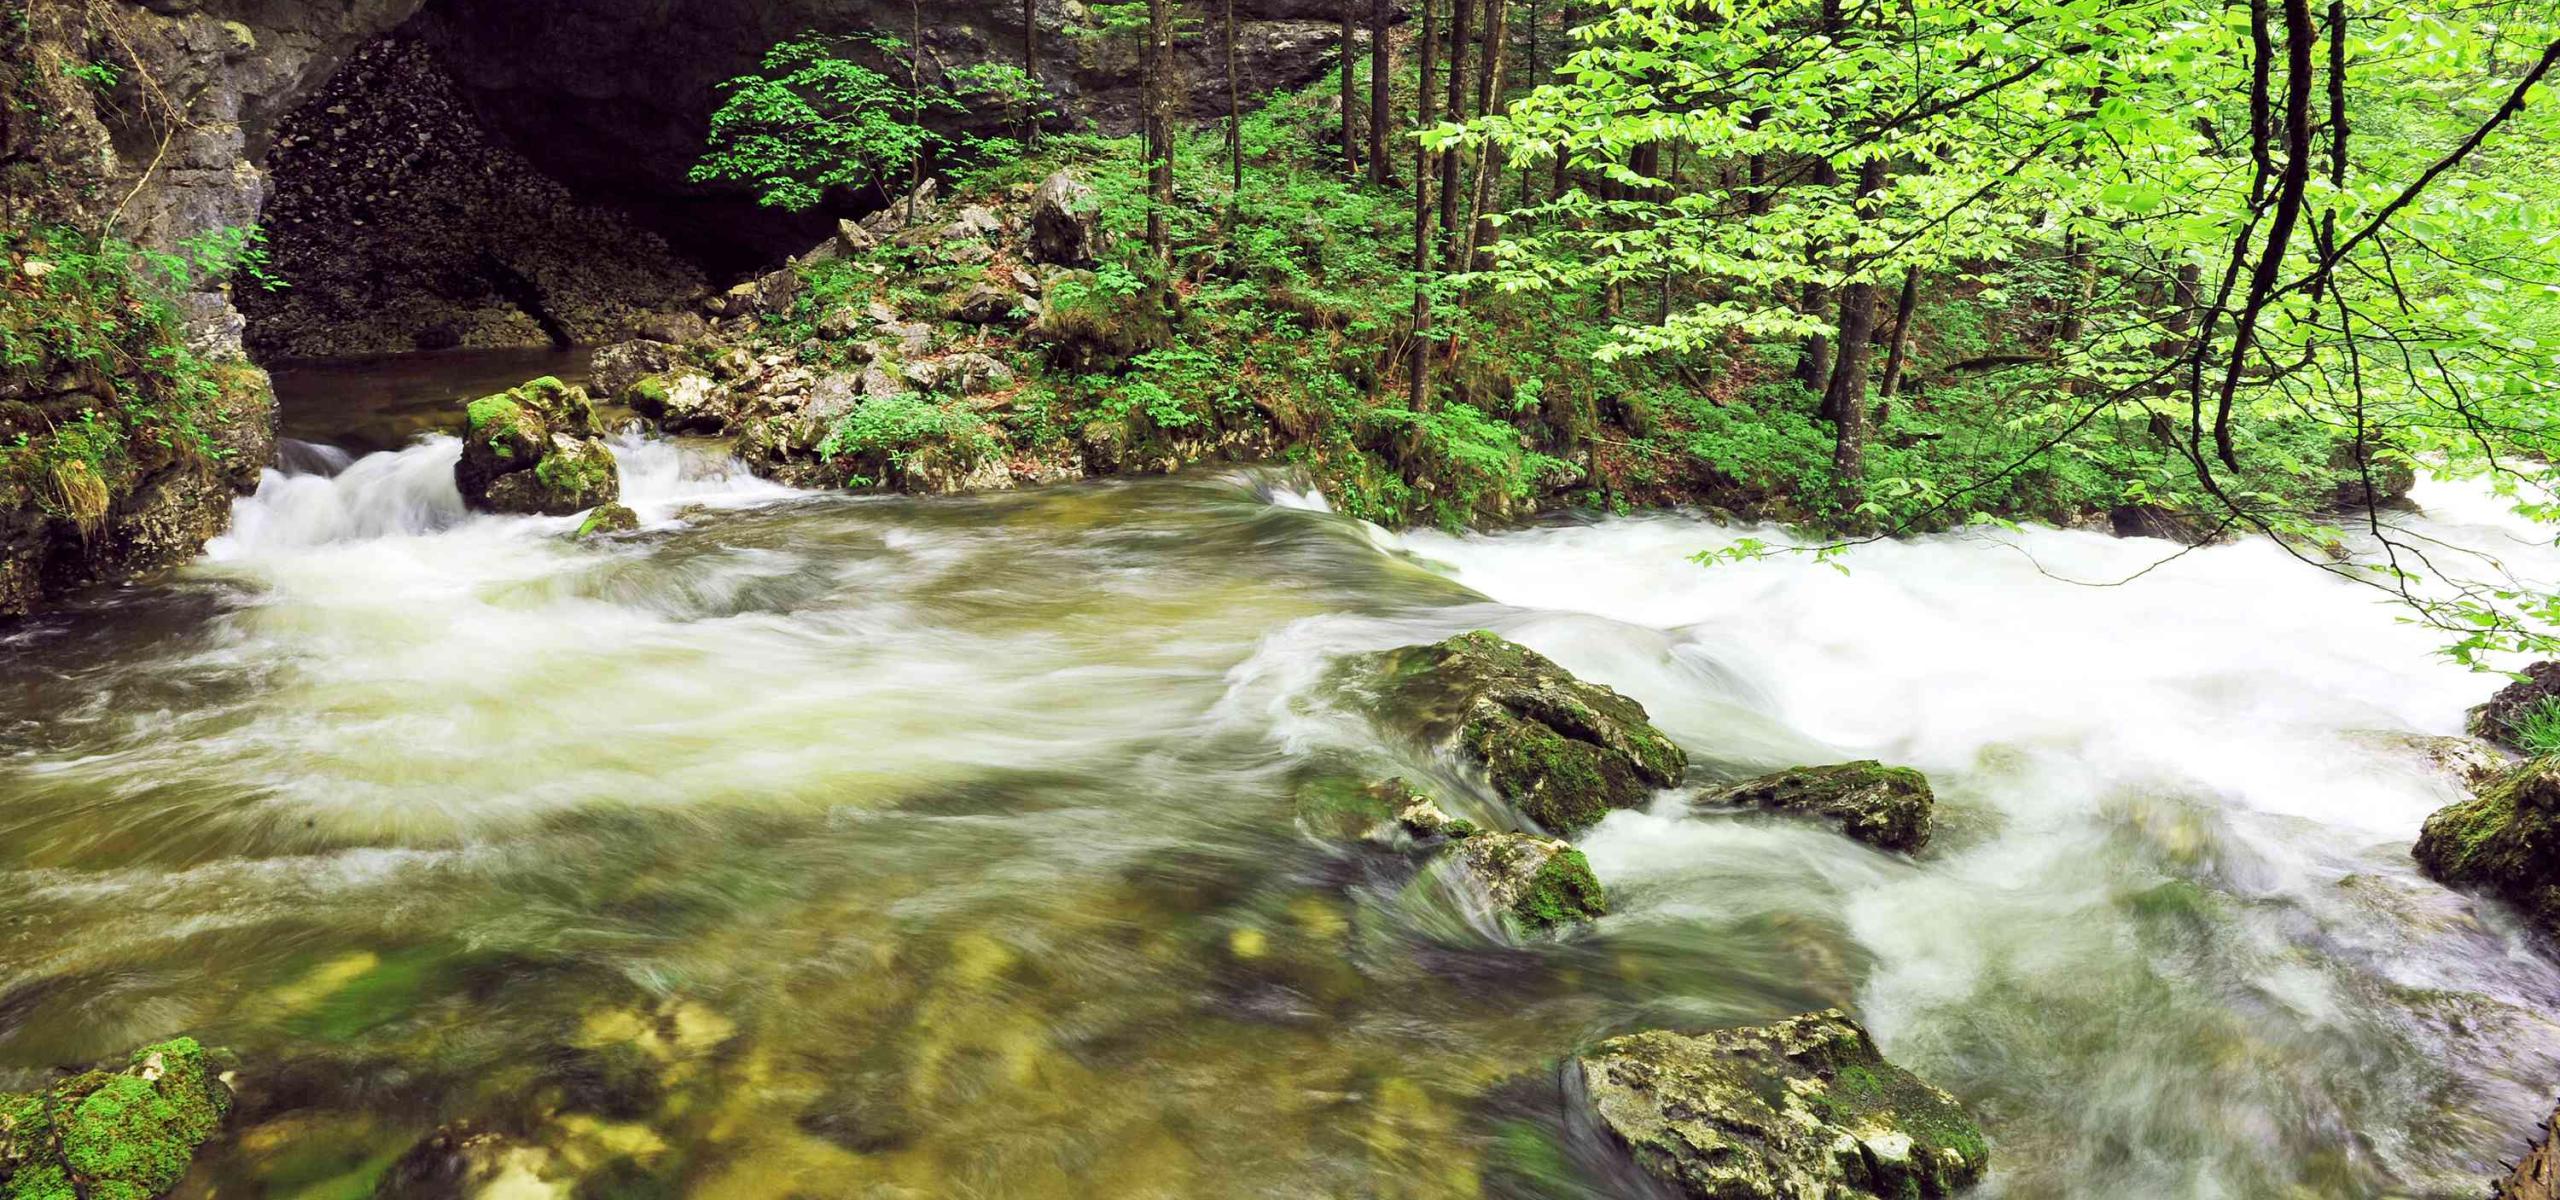 Pramenitá voda vyvěrá na povrch pod skalním portálem a při povodni se vlévá do horského potoka.